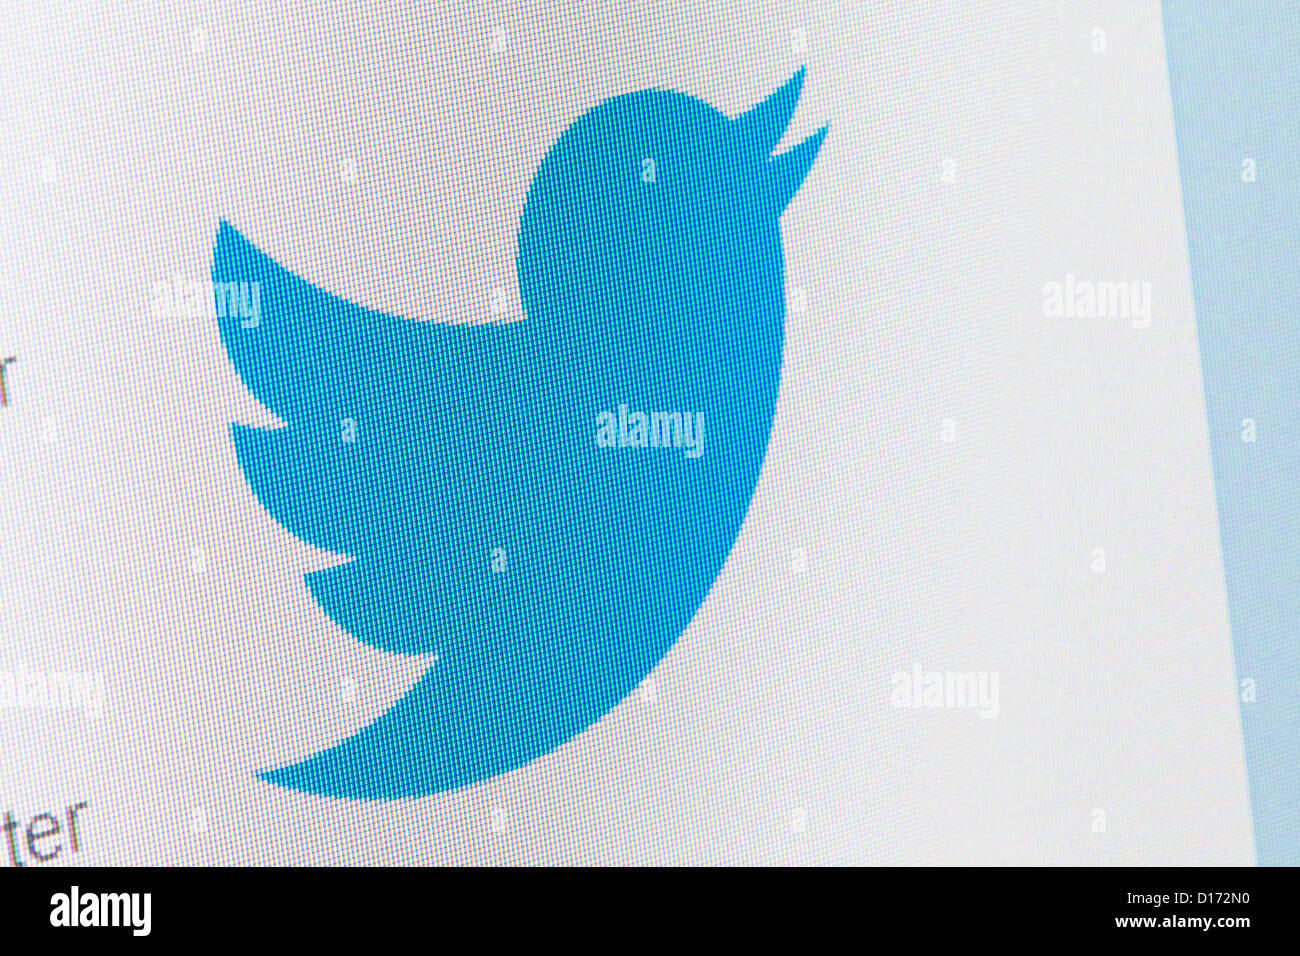 pink twitter logo